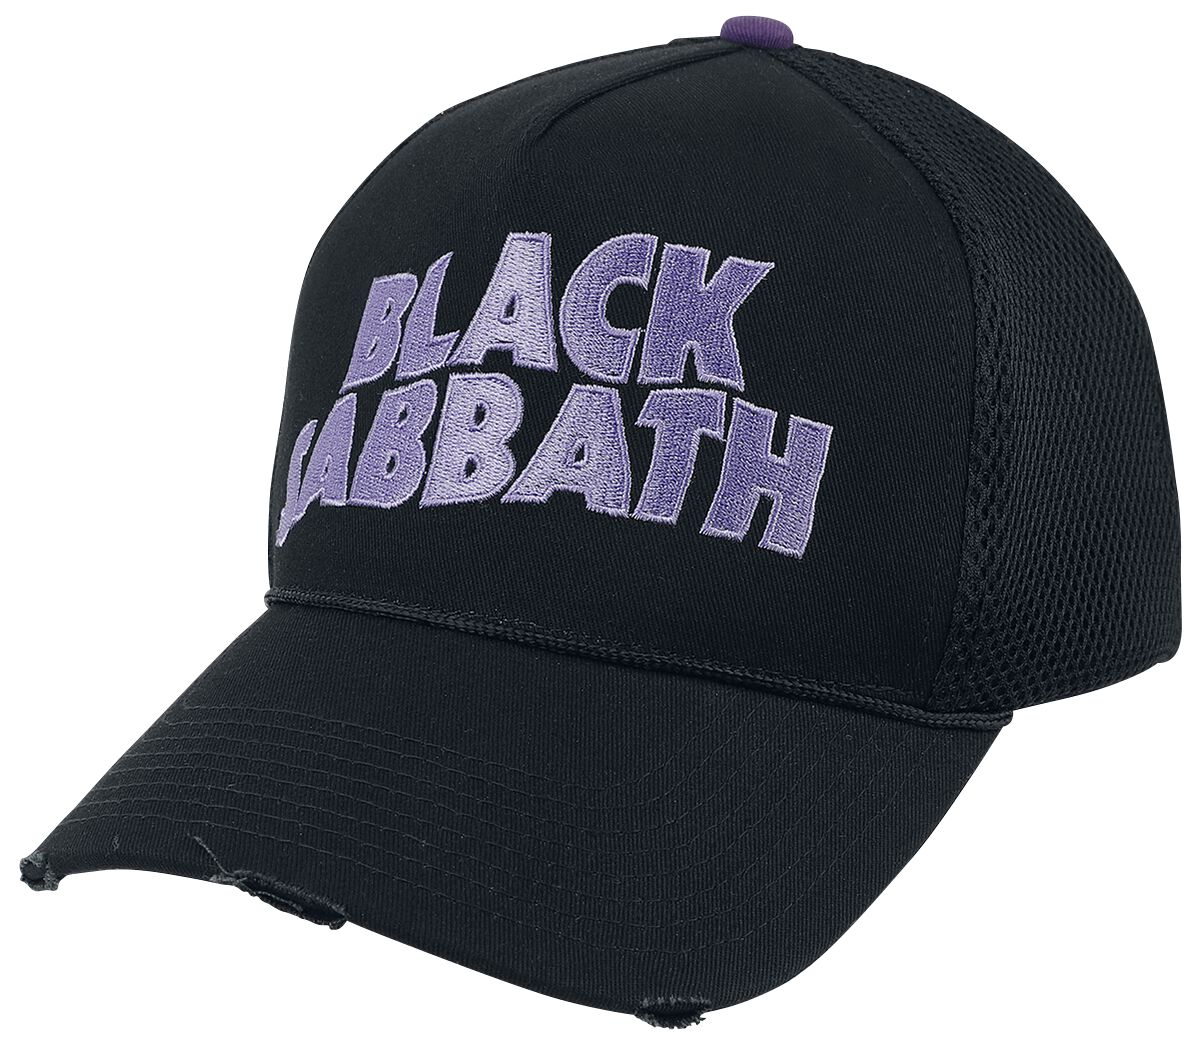 Black Sabbath Master of reality - Trucker Cap Cap black